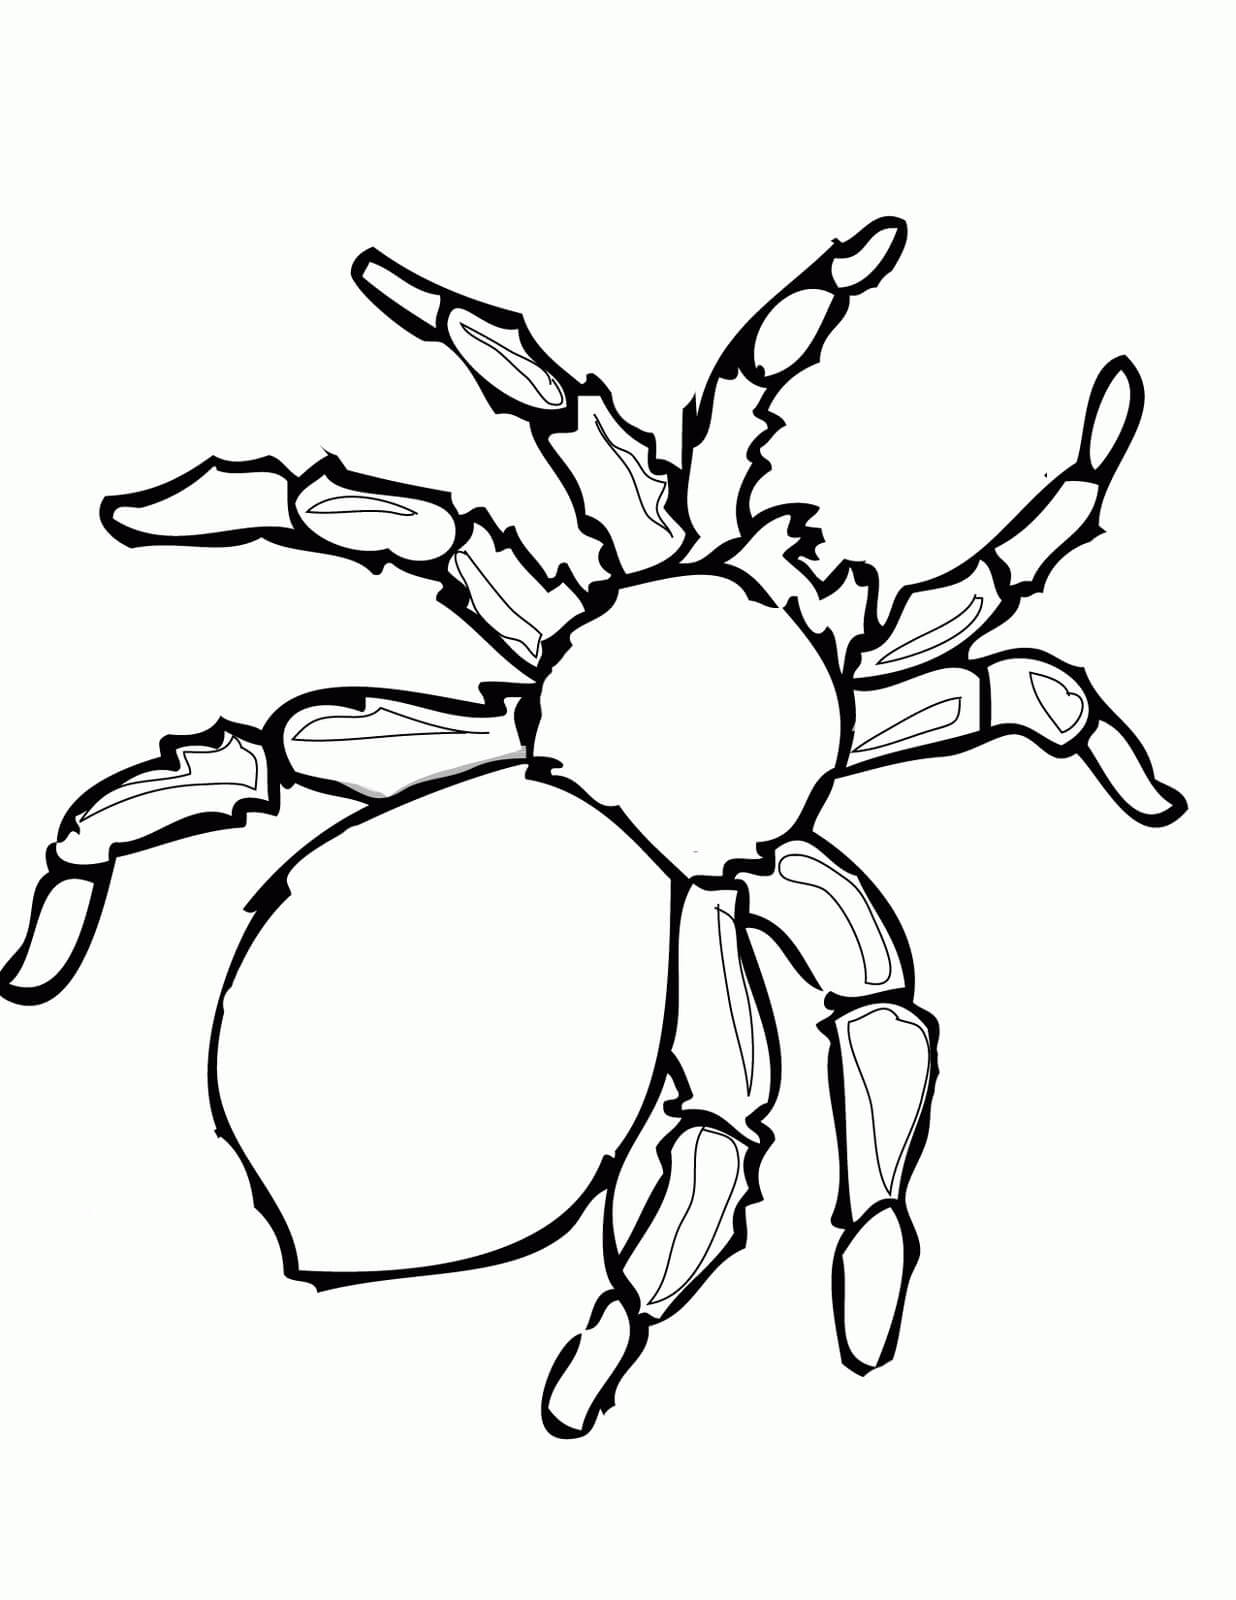 Aranha Simples para colorir